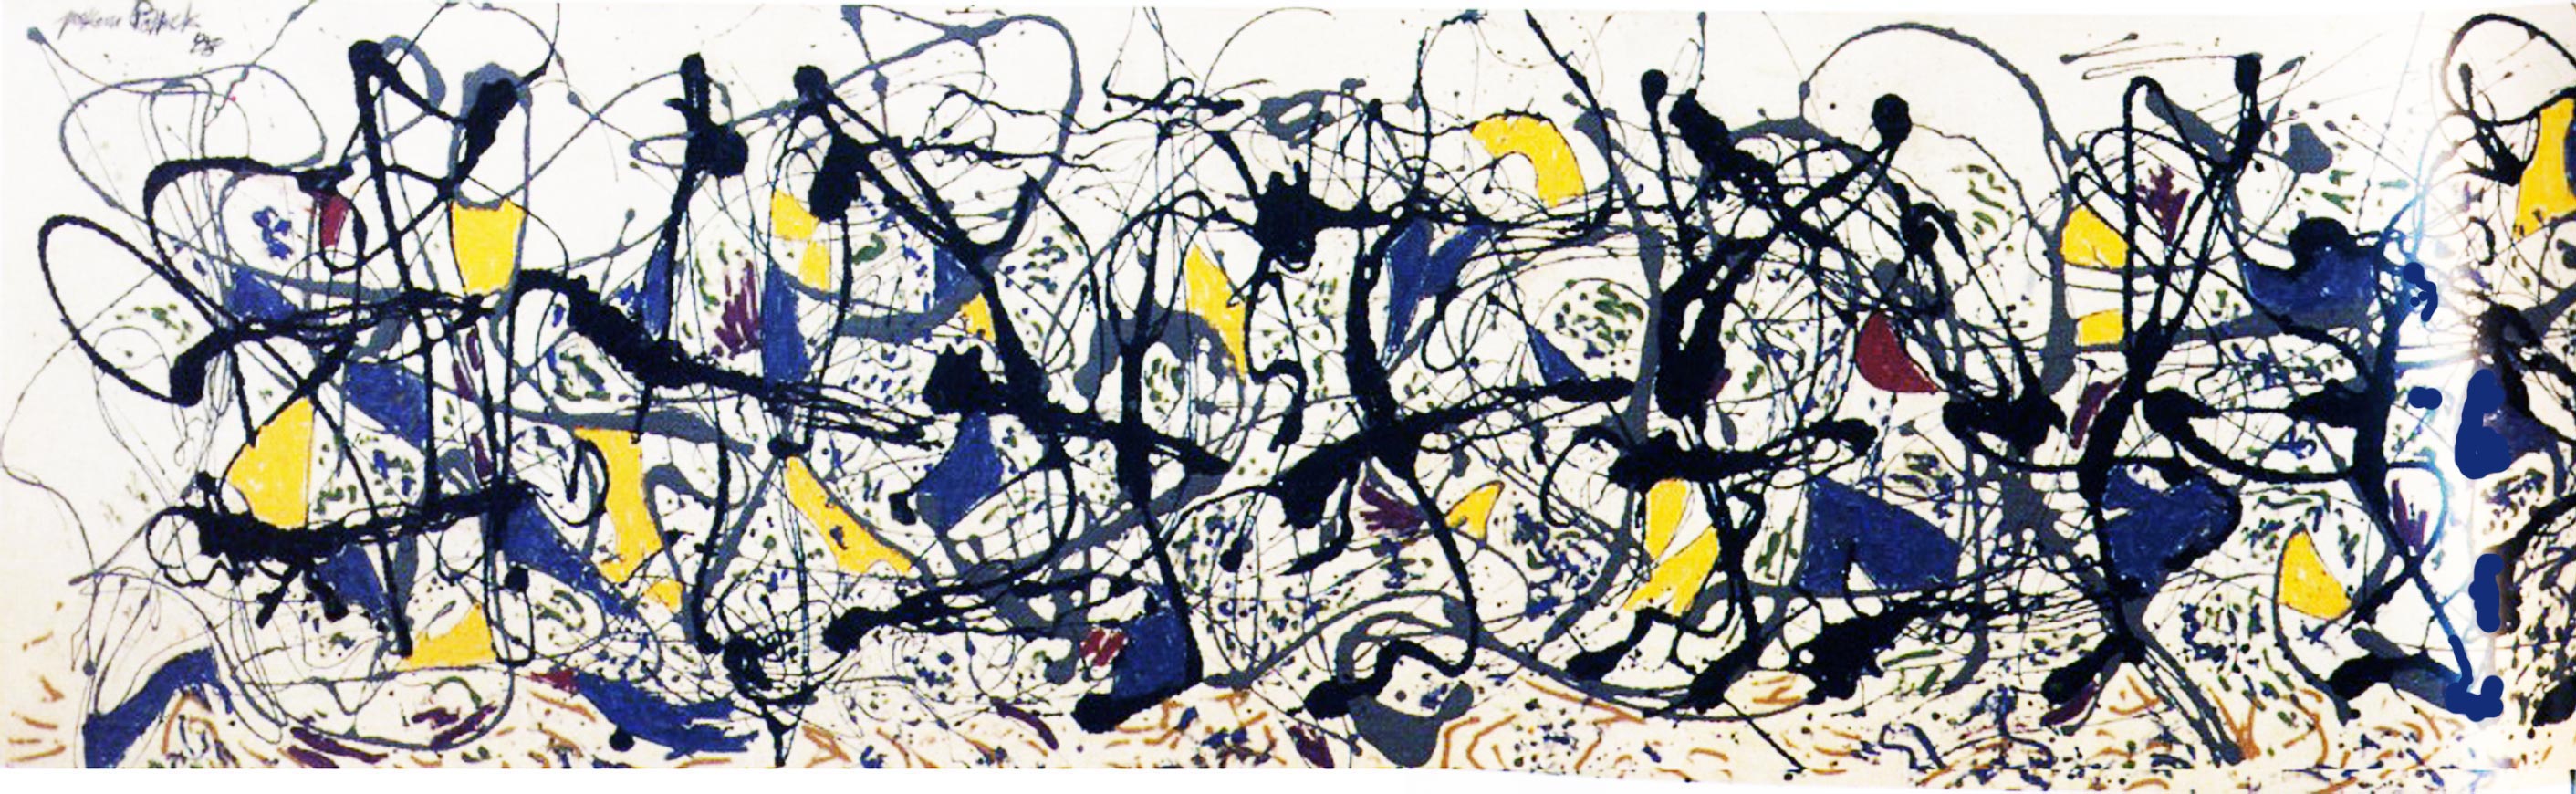 Summertime Jackson Pollock 